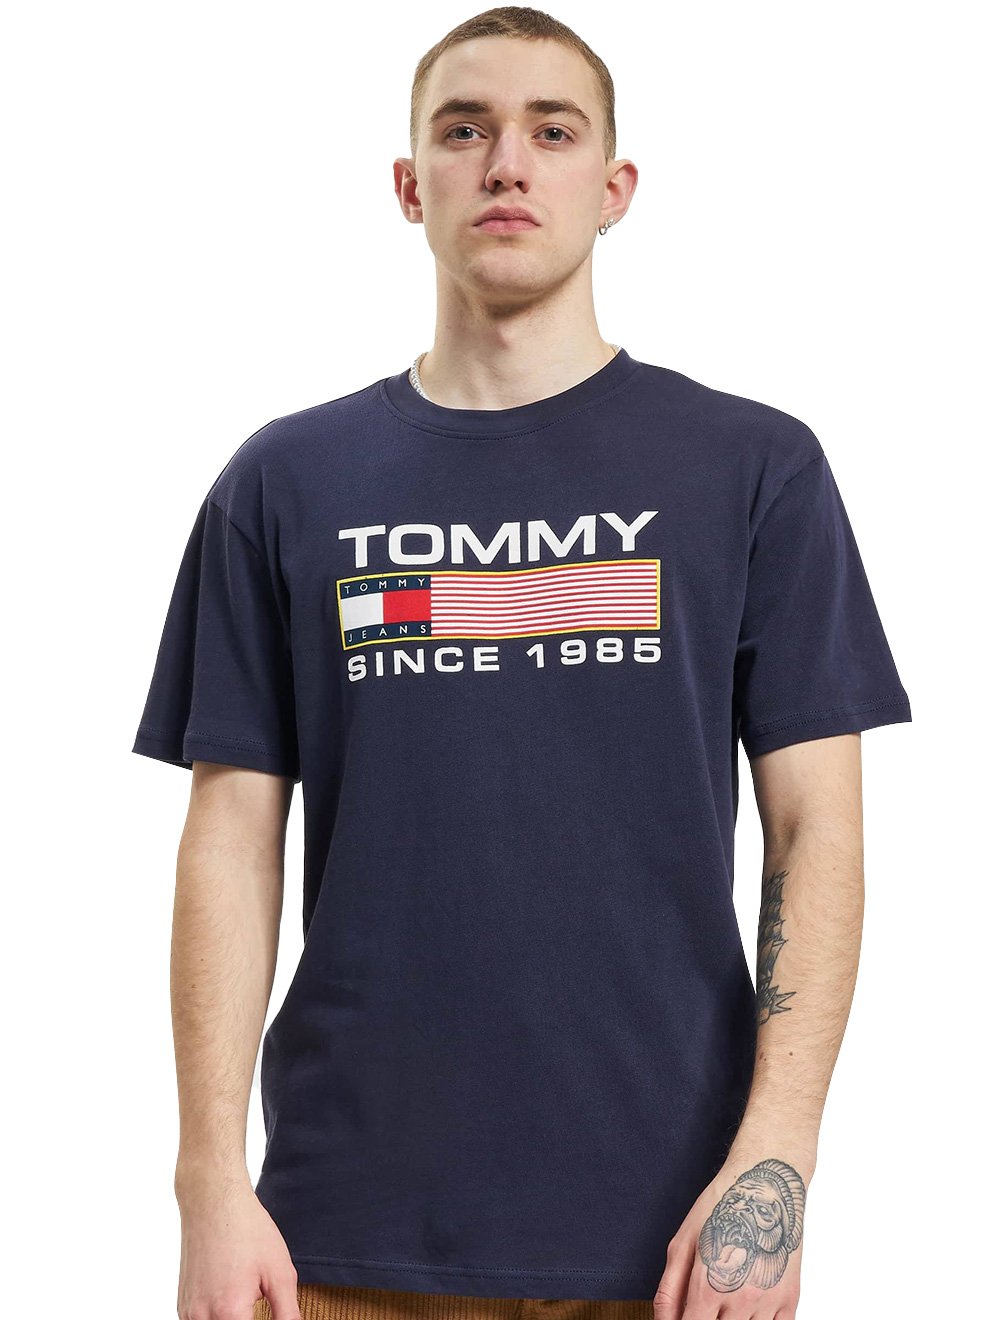 Camiseta Tommy Jeans Masculina Classic Athletic Twisted Logo Azul Marinho